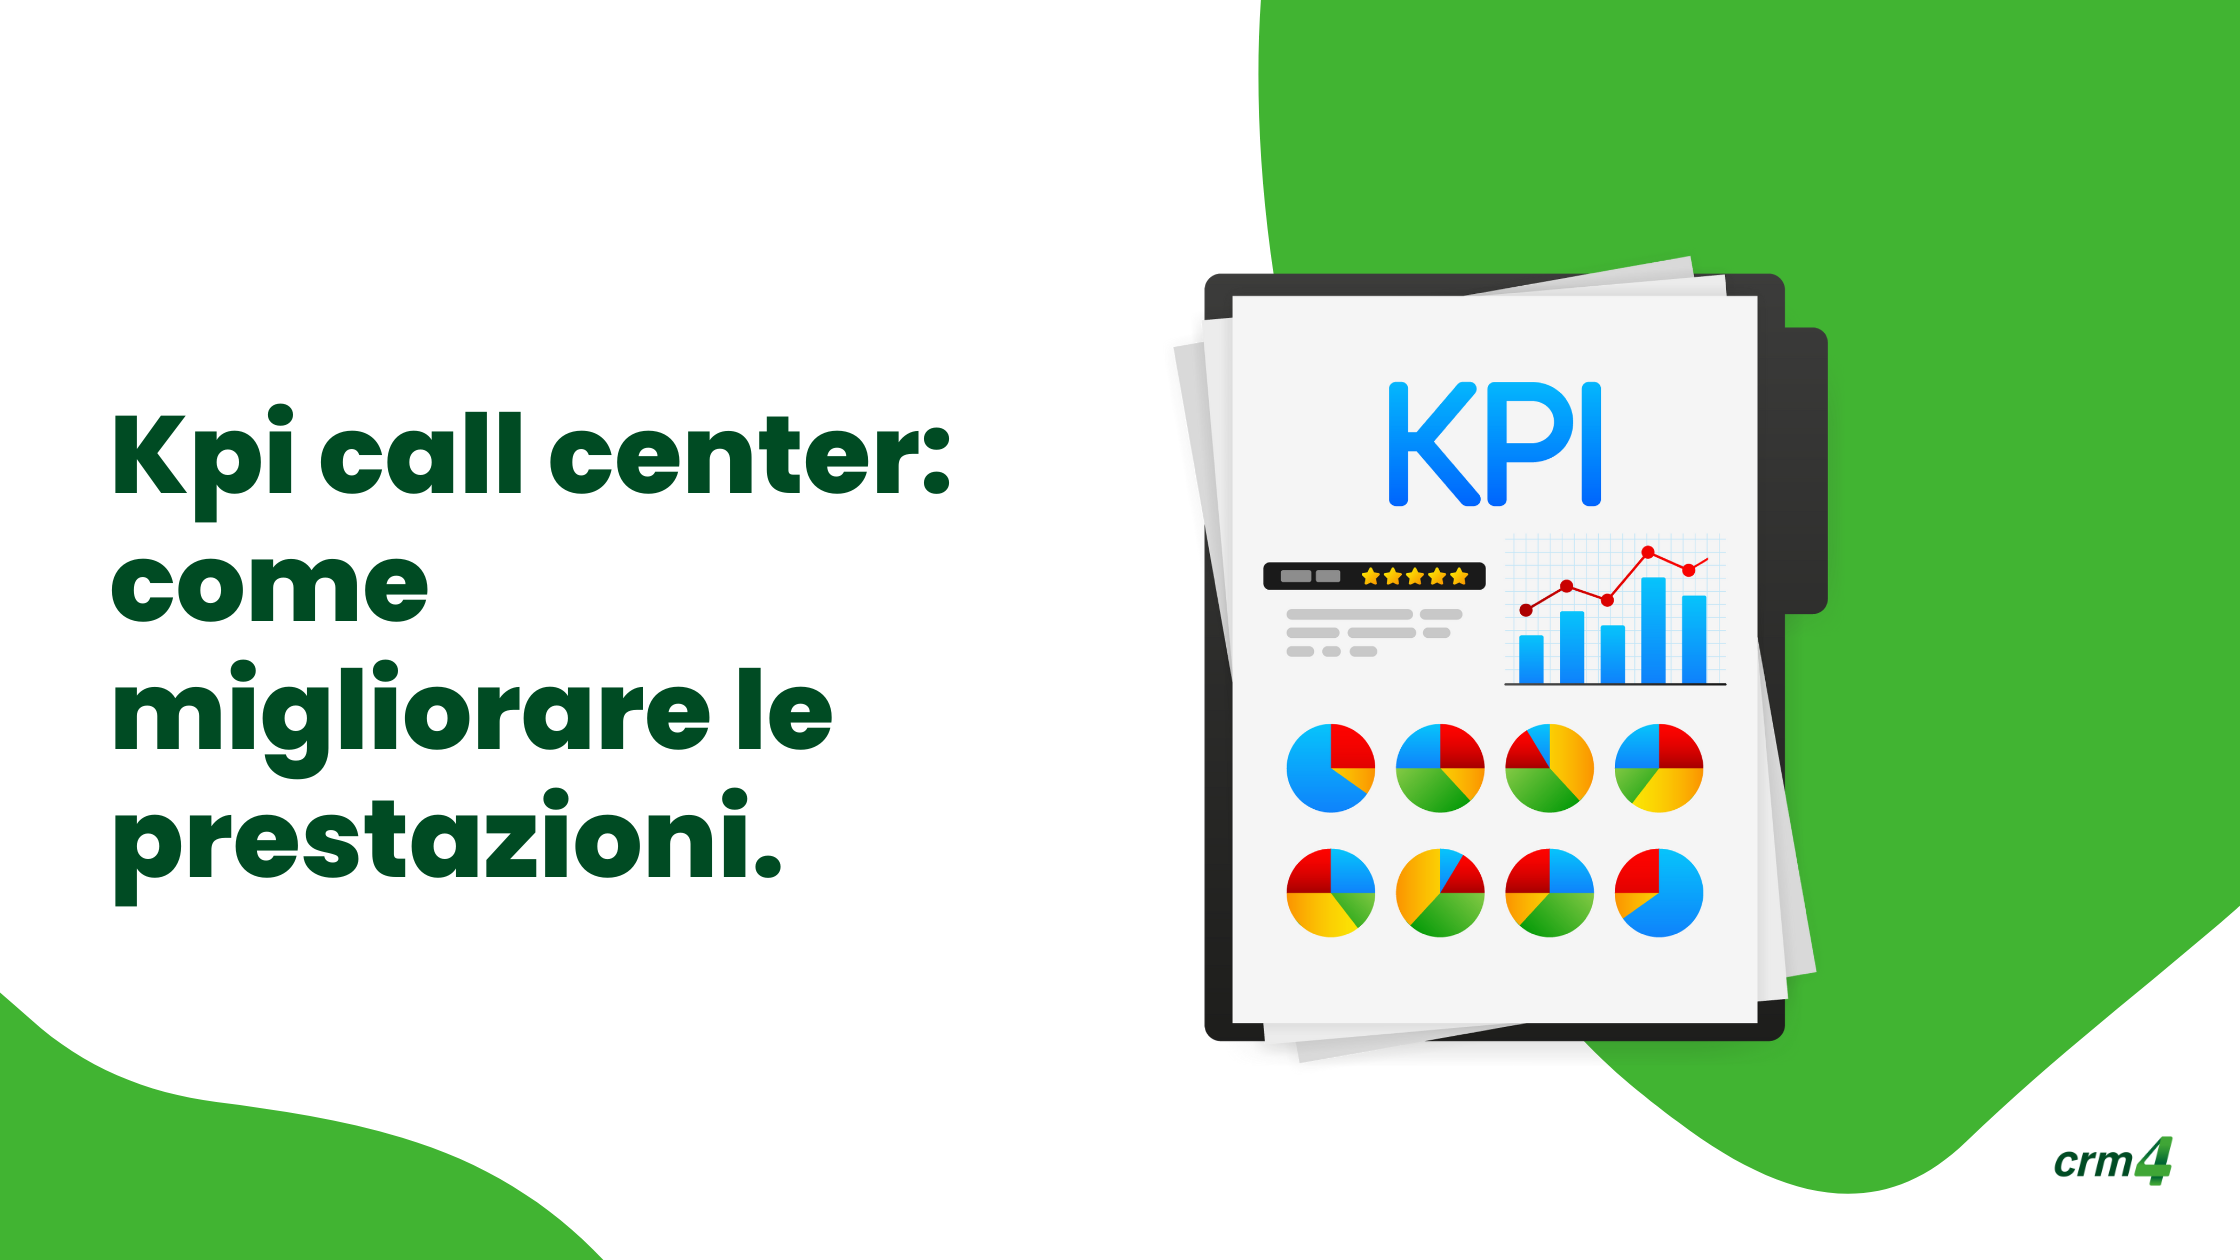 Kpi call center: come migliorare le prestazioni.